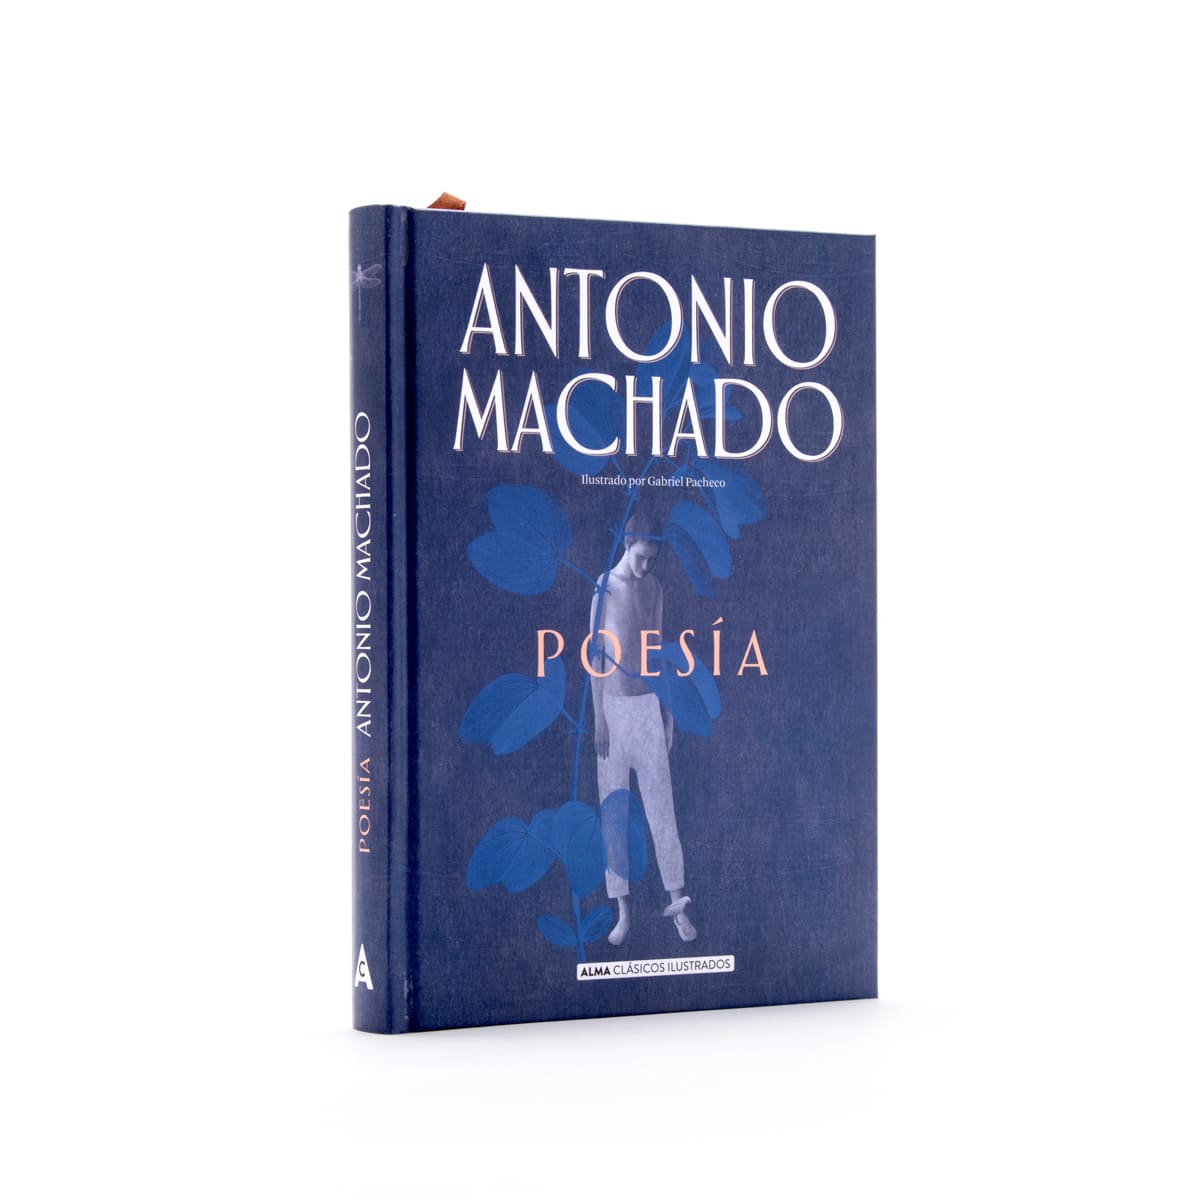 Antonio Machado. Poesía